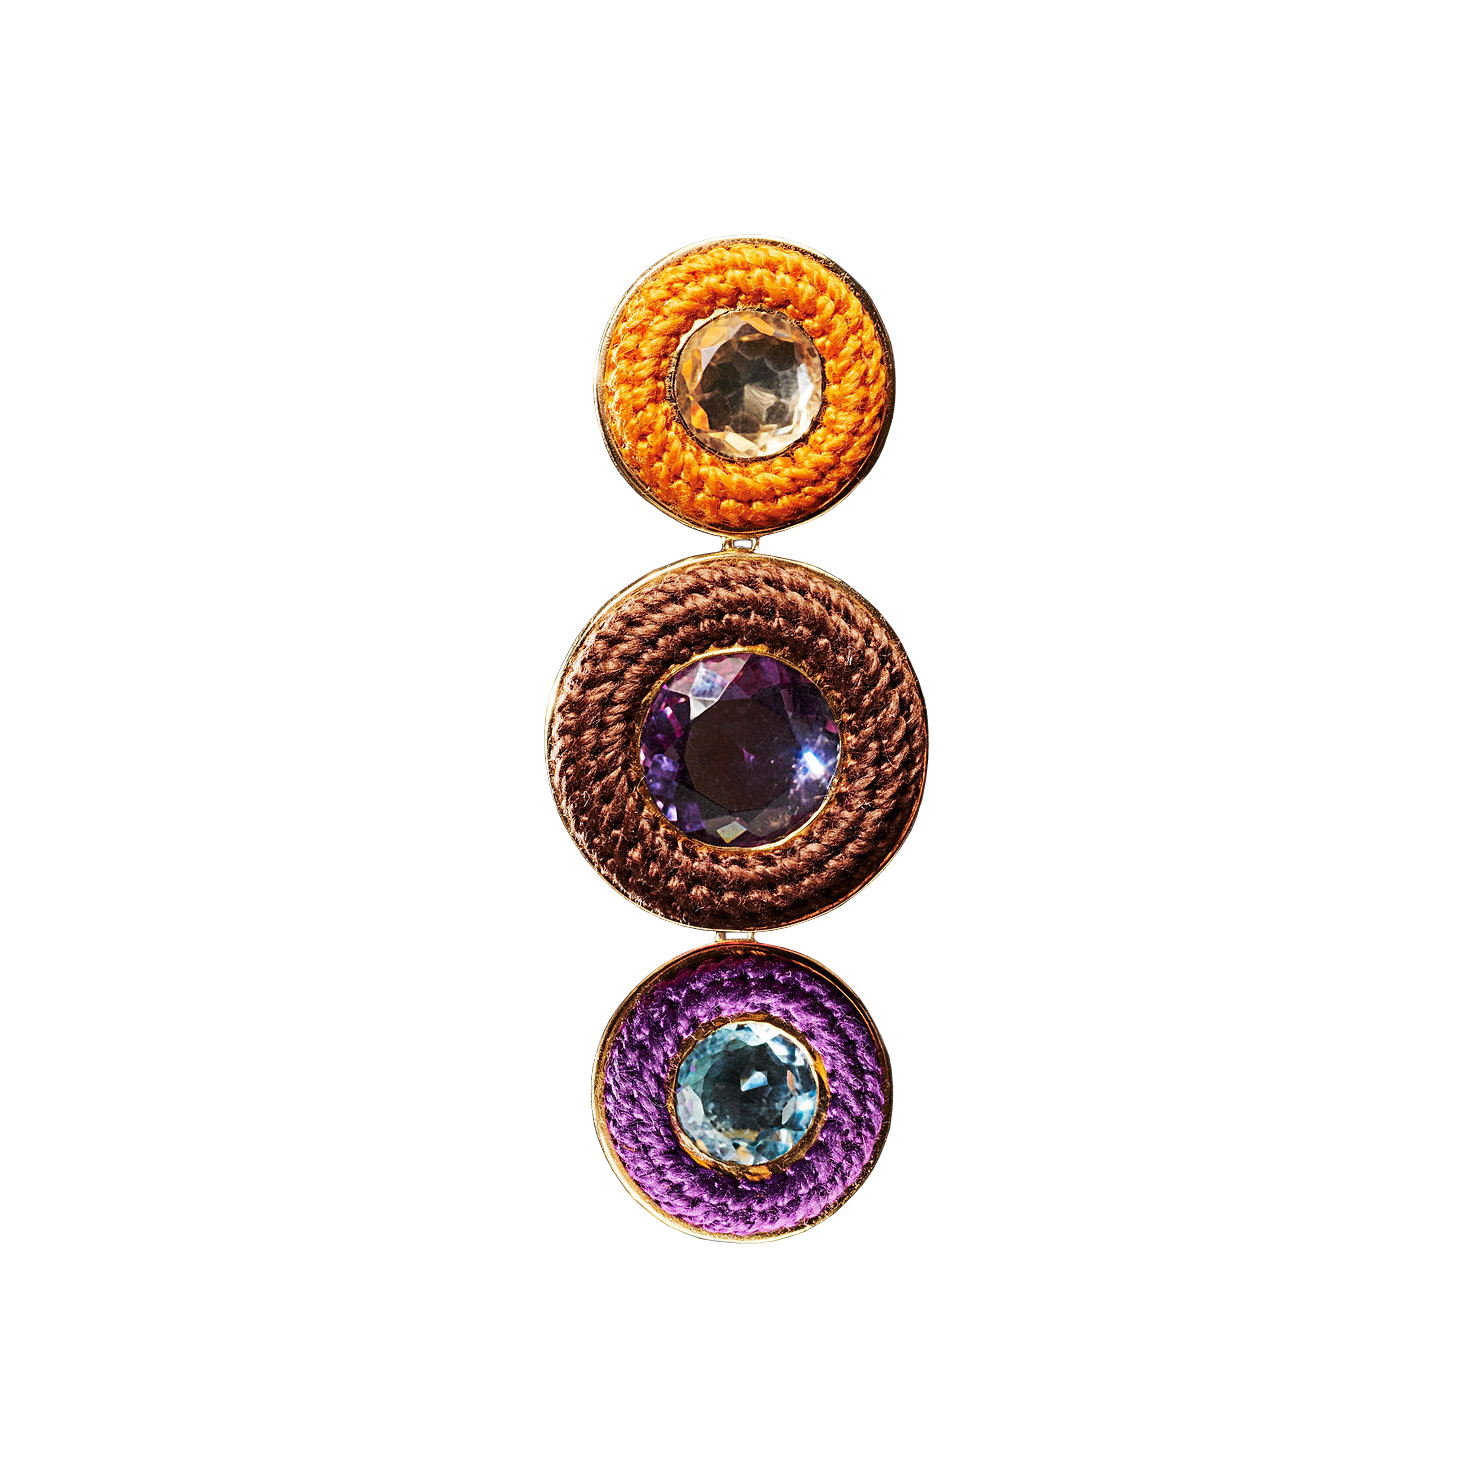 Single Samba Earring in Orange, Brown and Purple